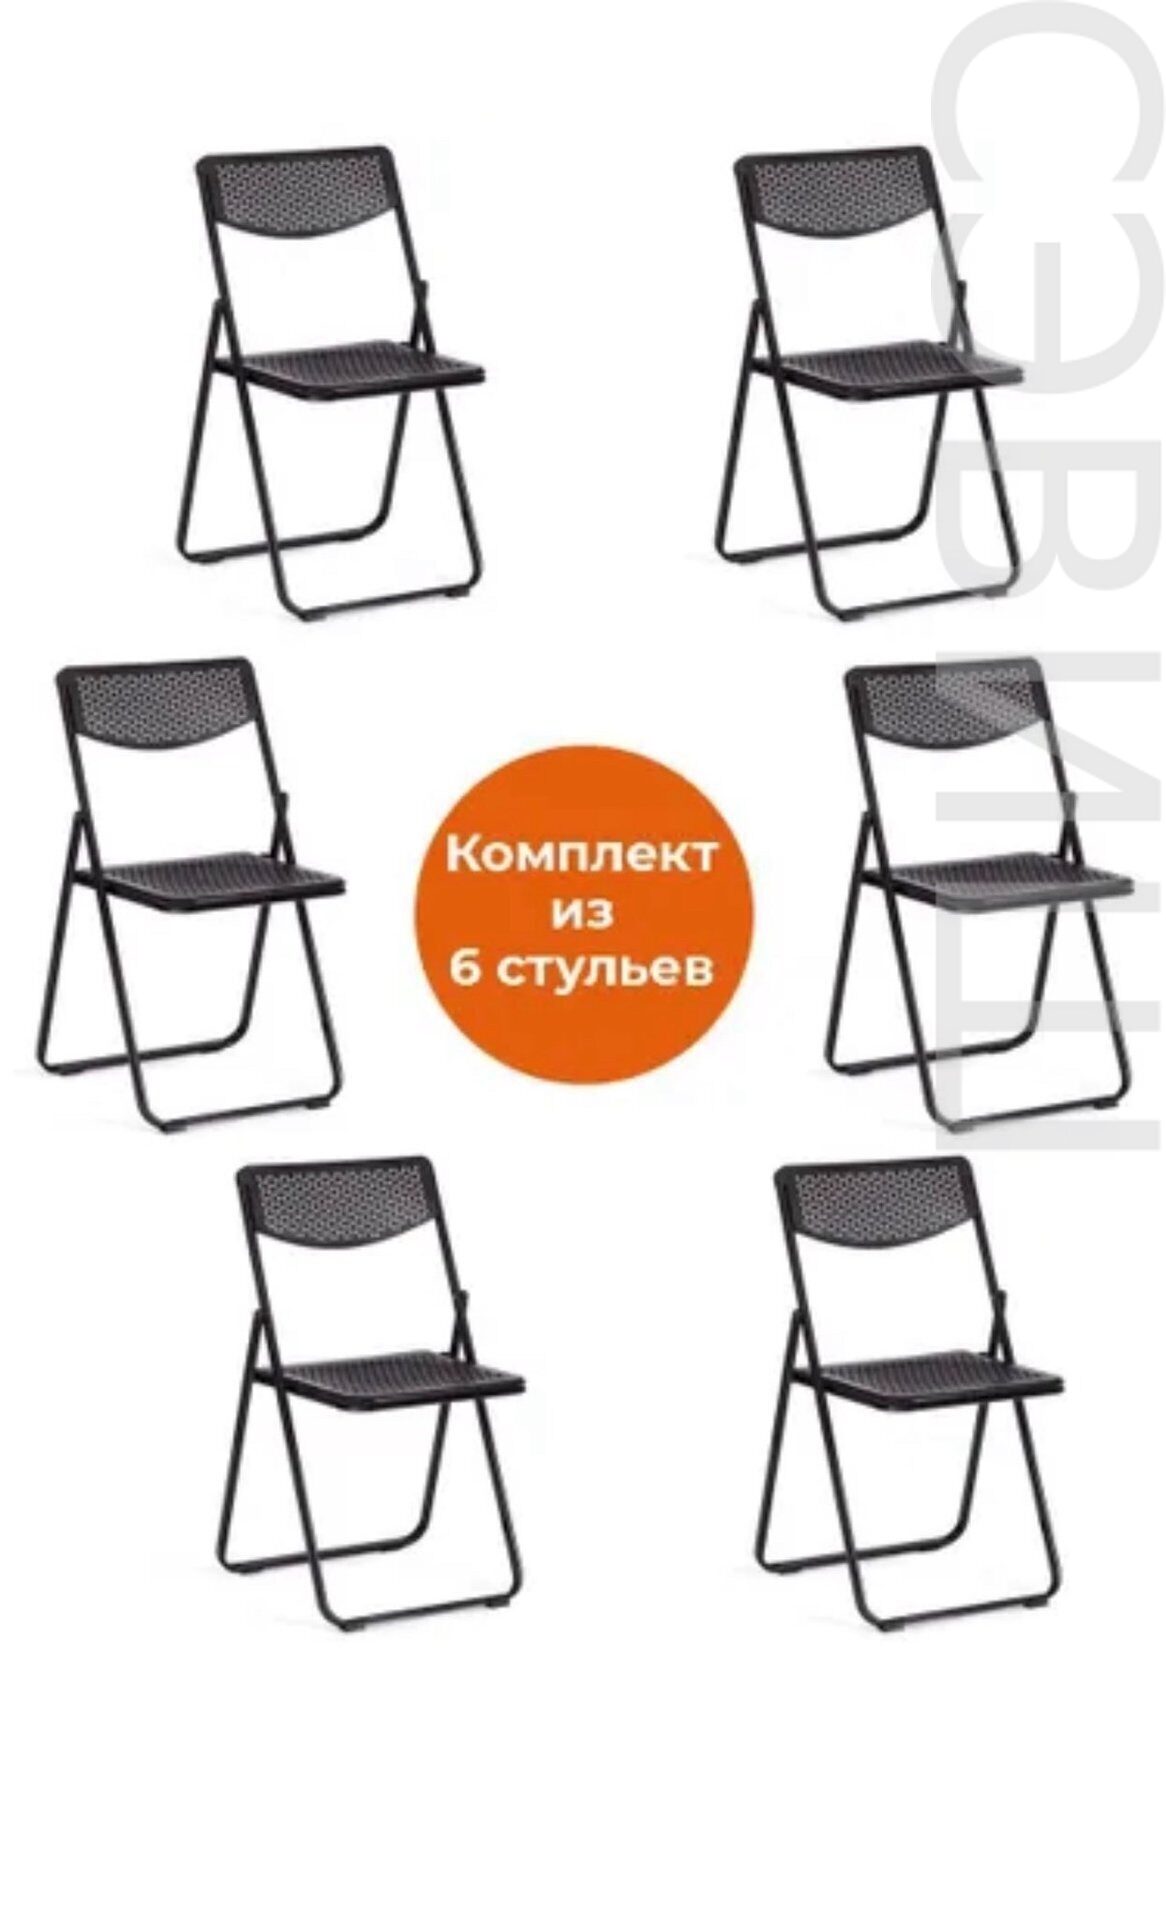 Комплект складных стульев FOLDER (пластик с перфорацией)